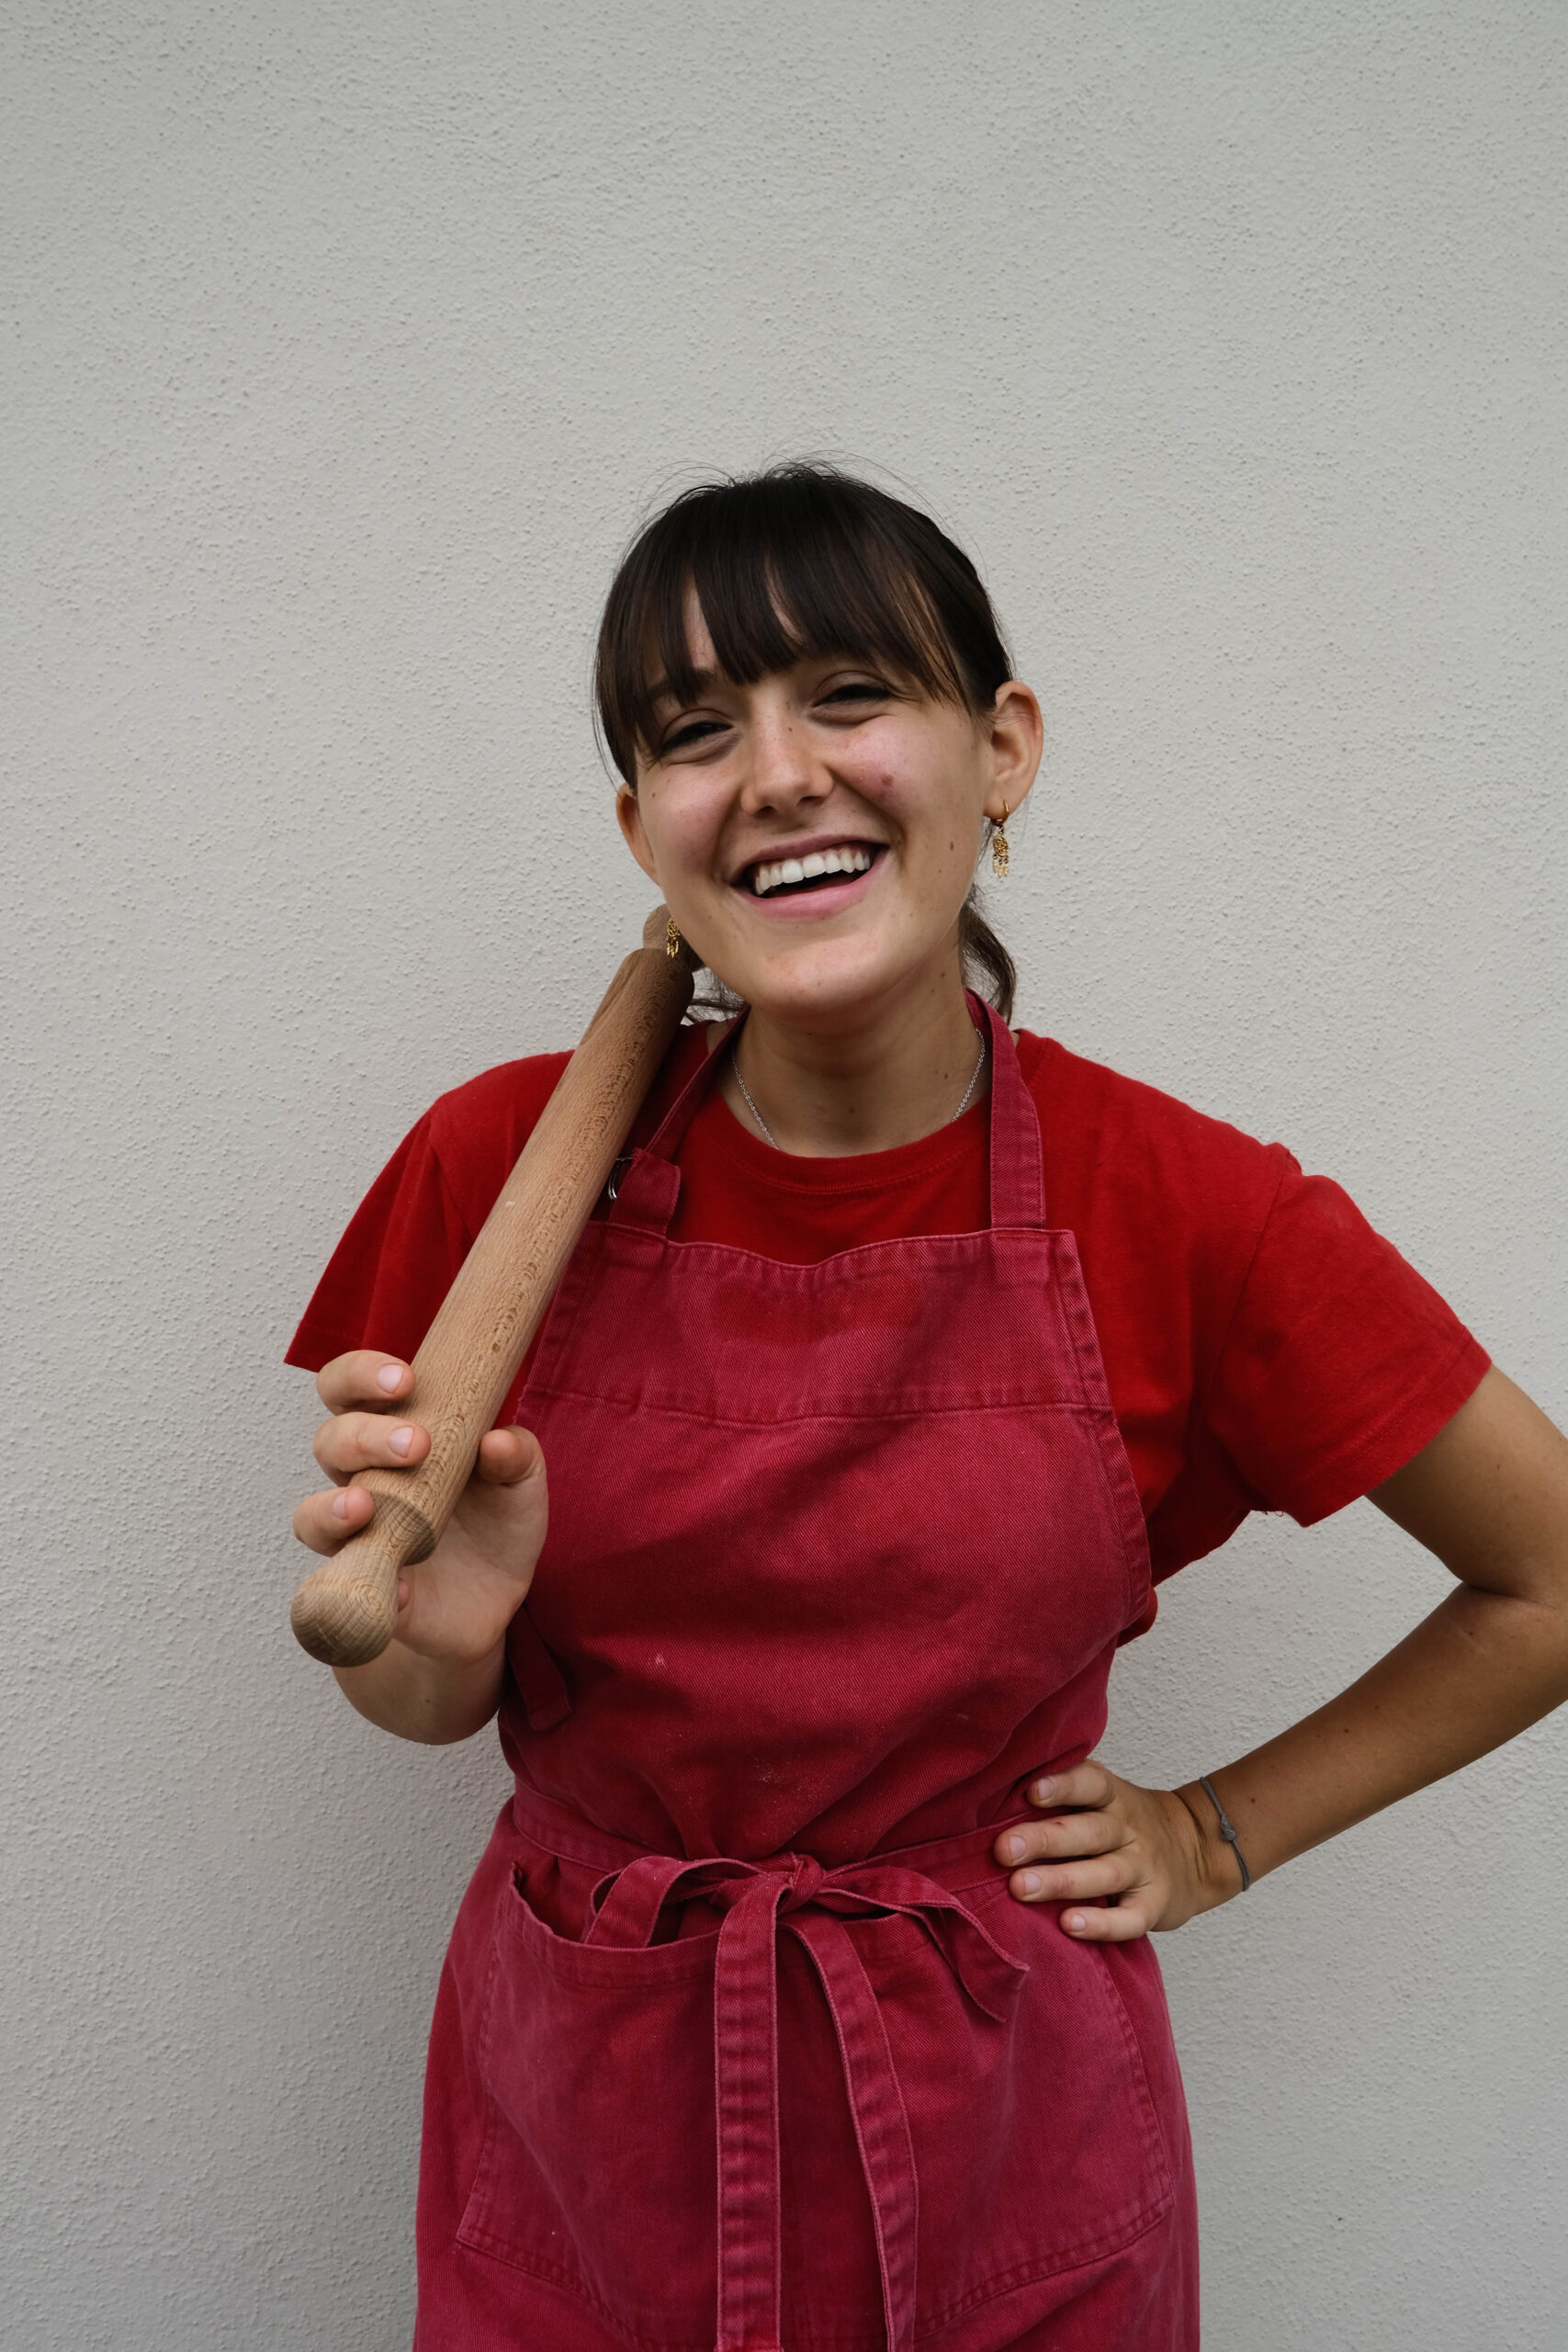 Food Network “Cooker girl – Chef in progress” Aurora Cavallo